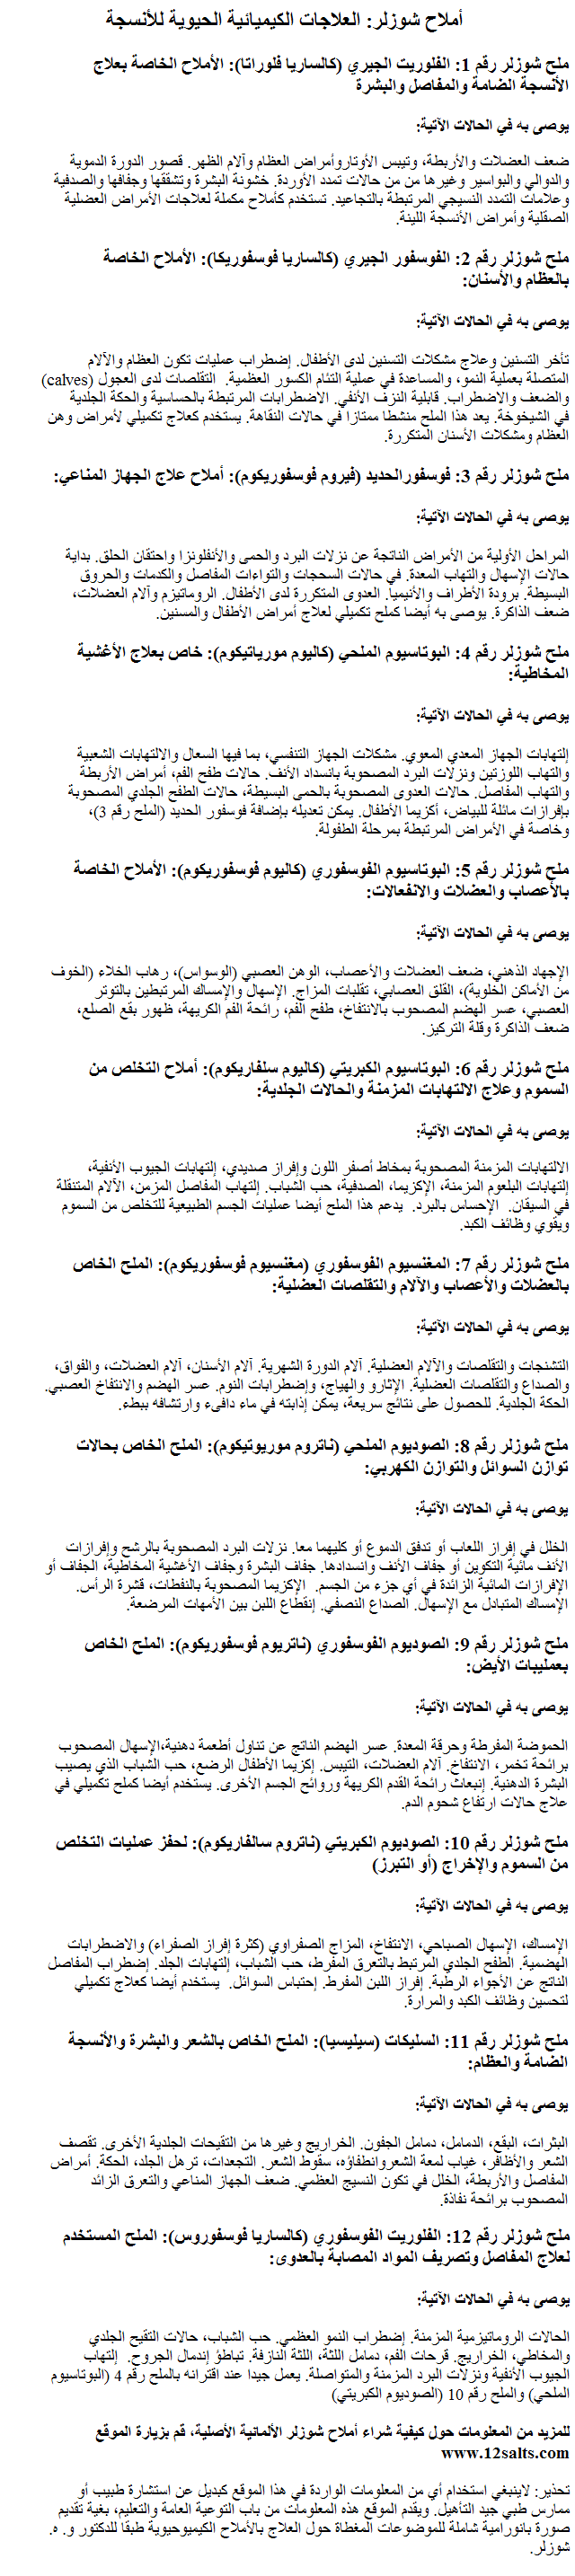 SCHUSSLER SALTS TRANSLATED - ARABIC